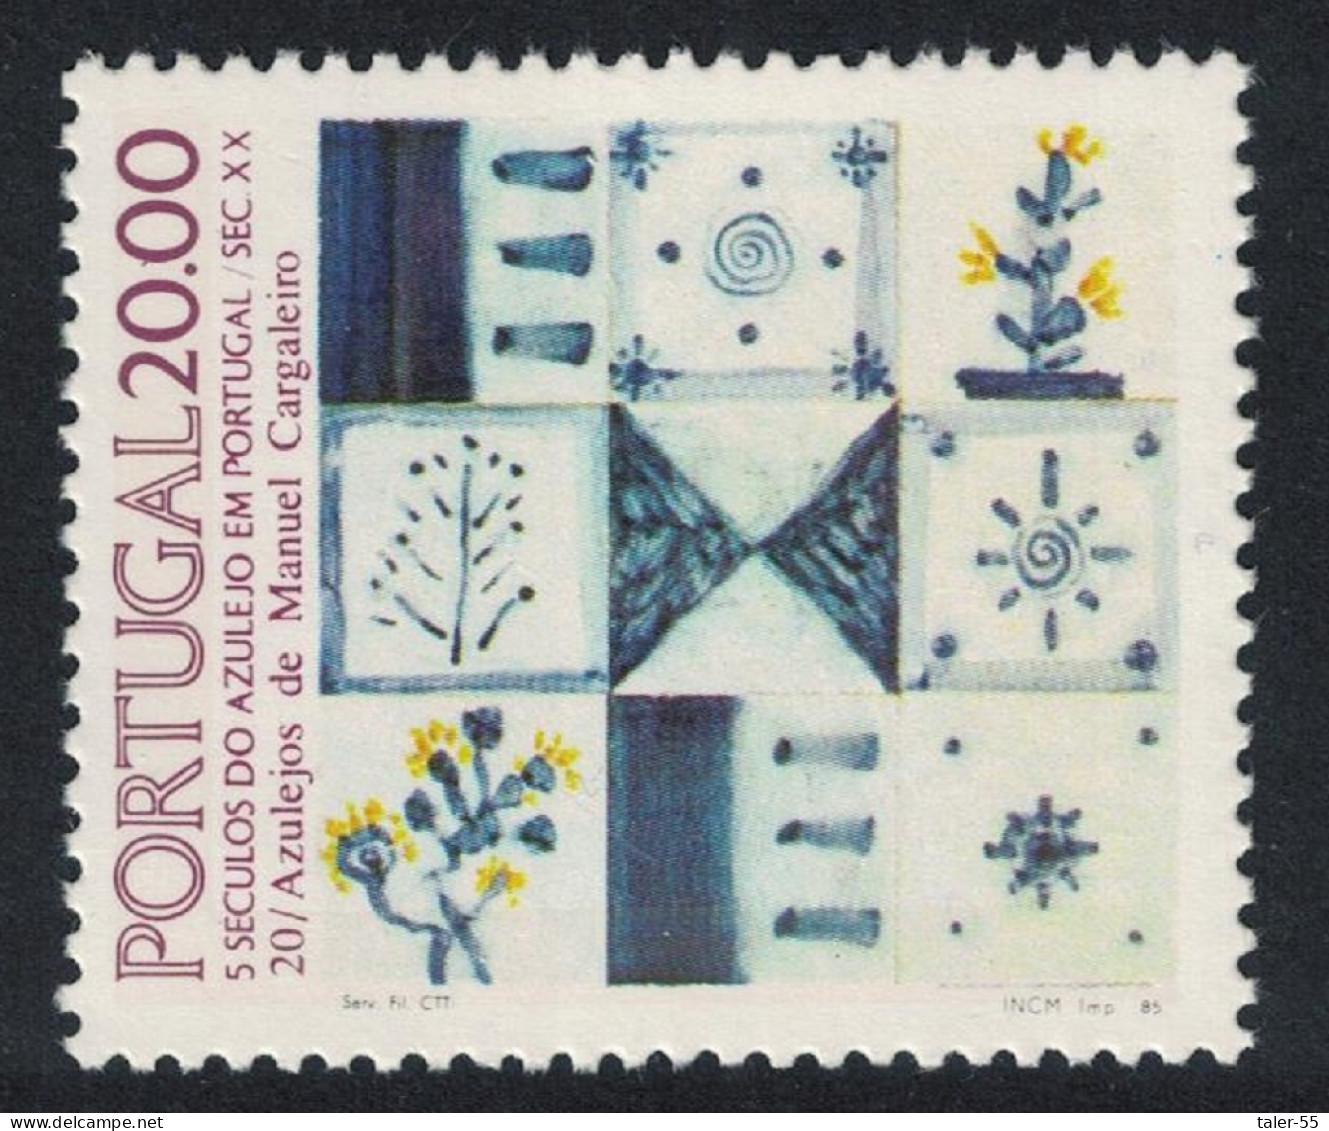 Portugal Tiles 20th Series 1985 MNH SG#2031 - Neufs